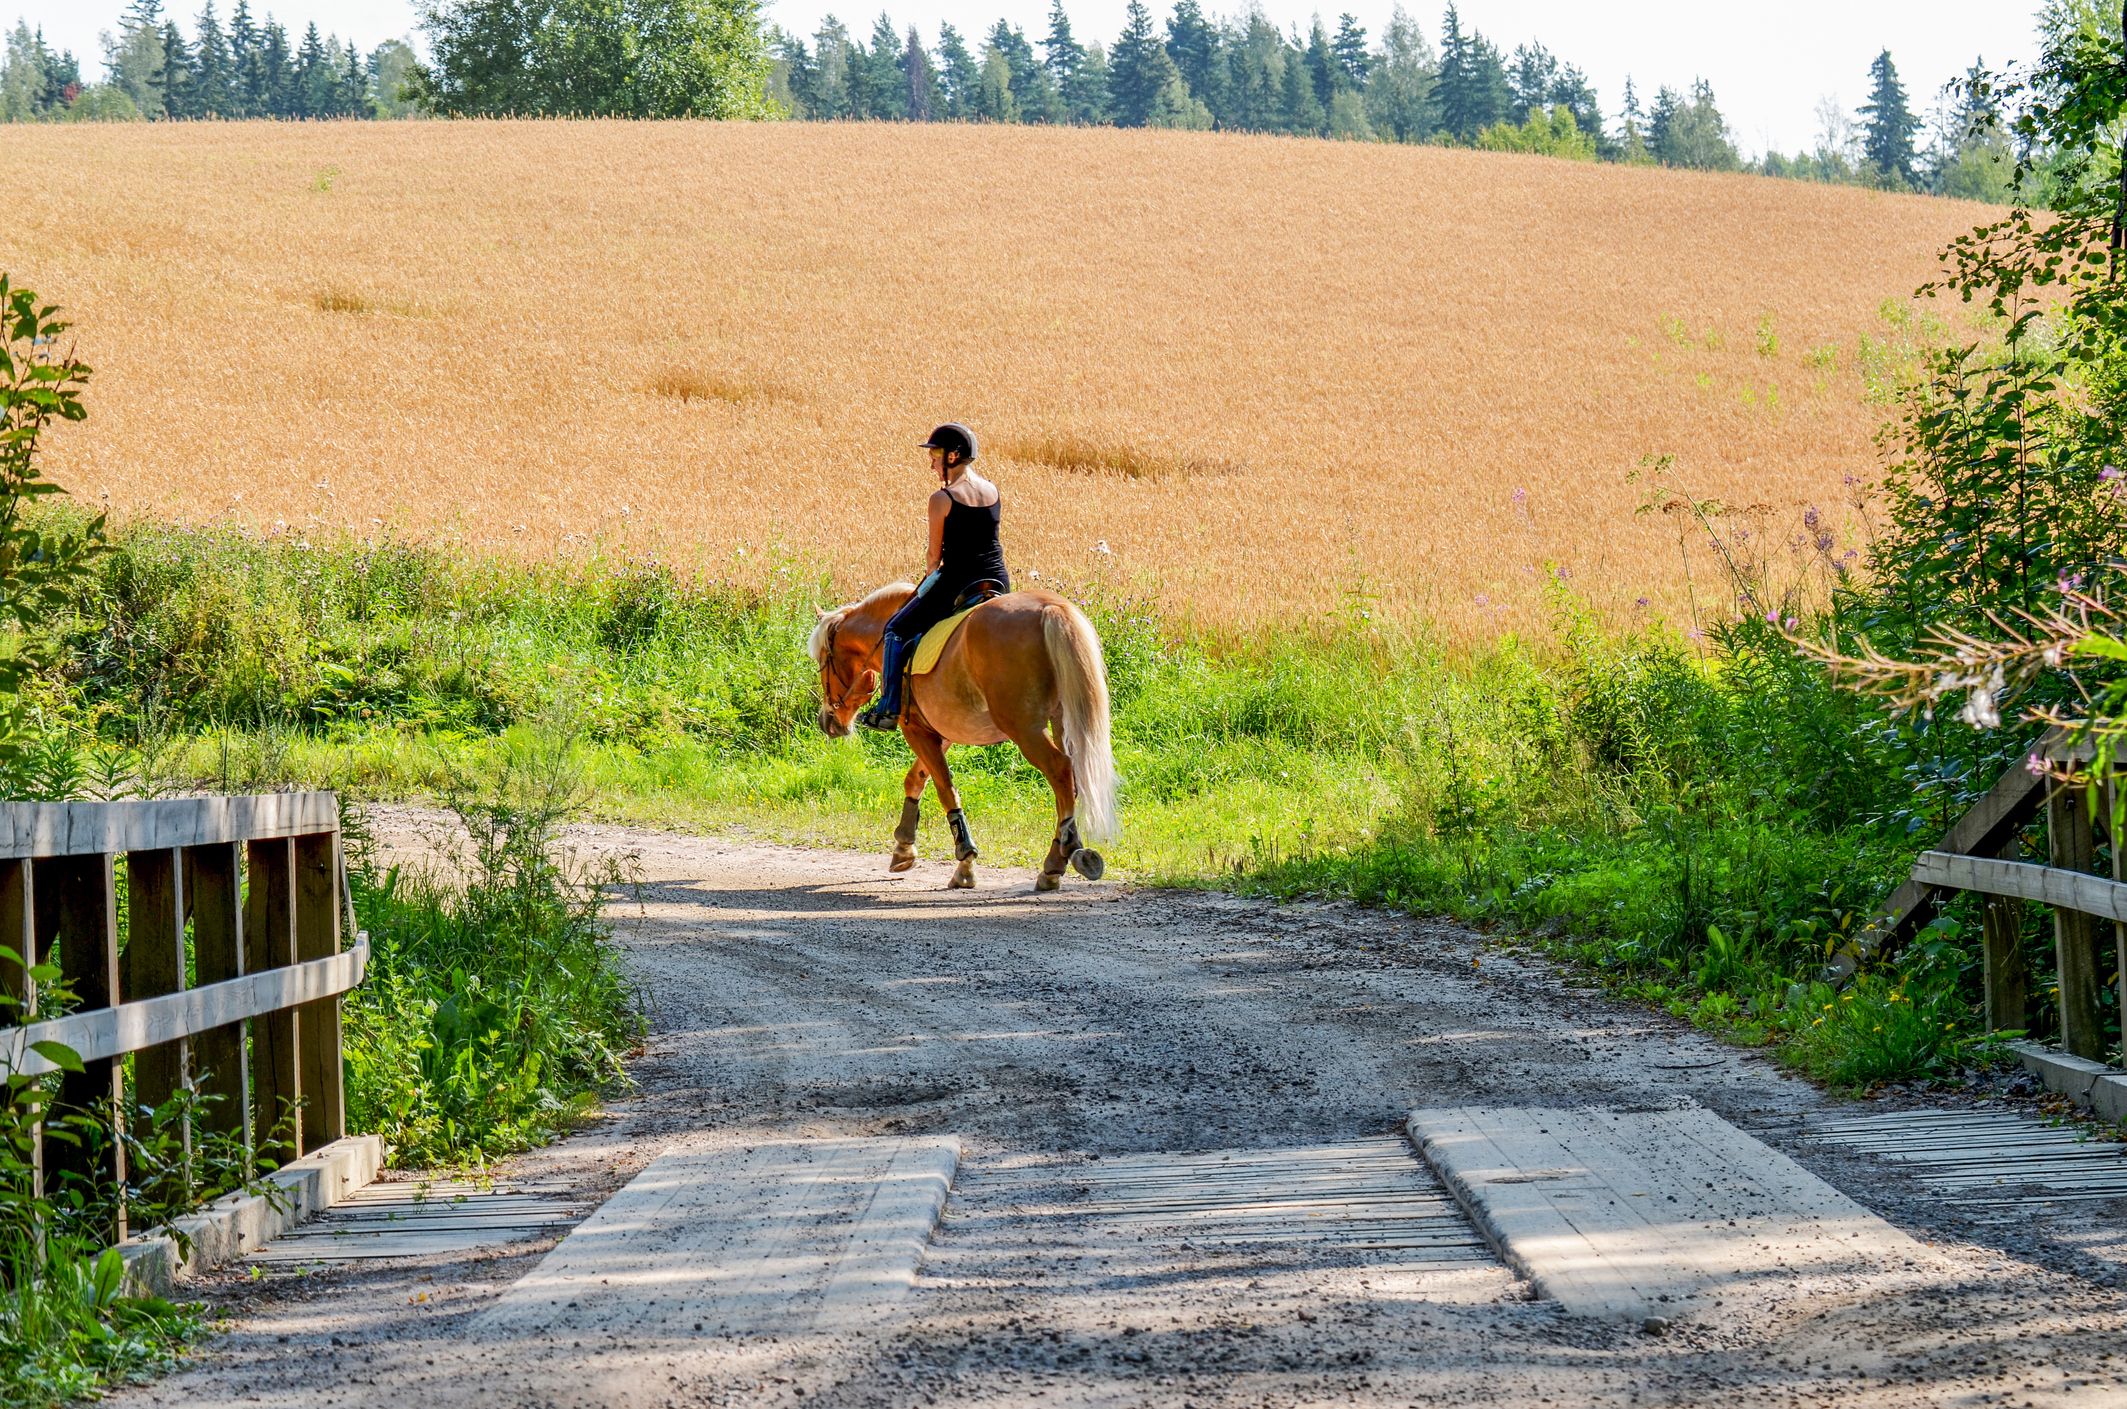 A woman riding a horse along a dirt road just past a bridge.